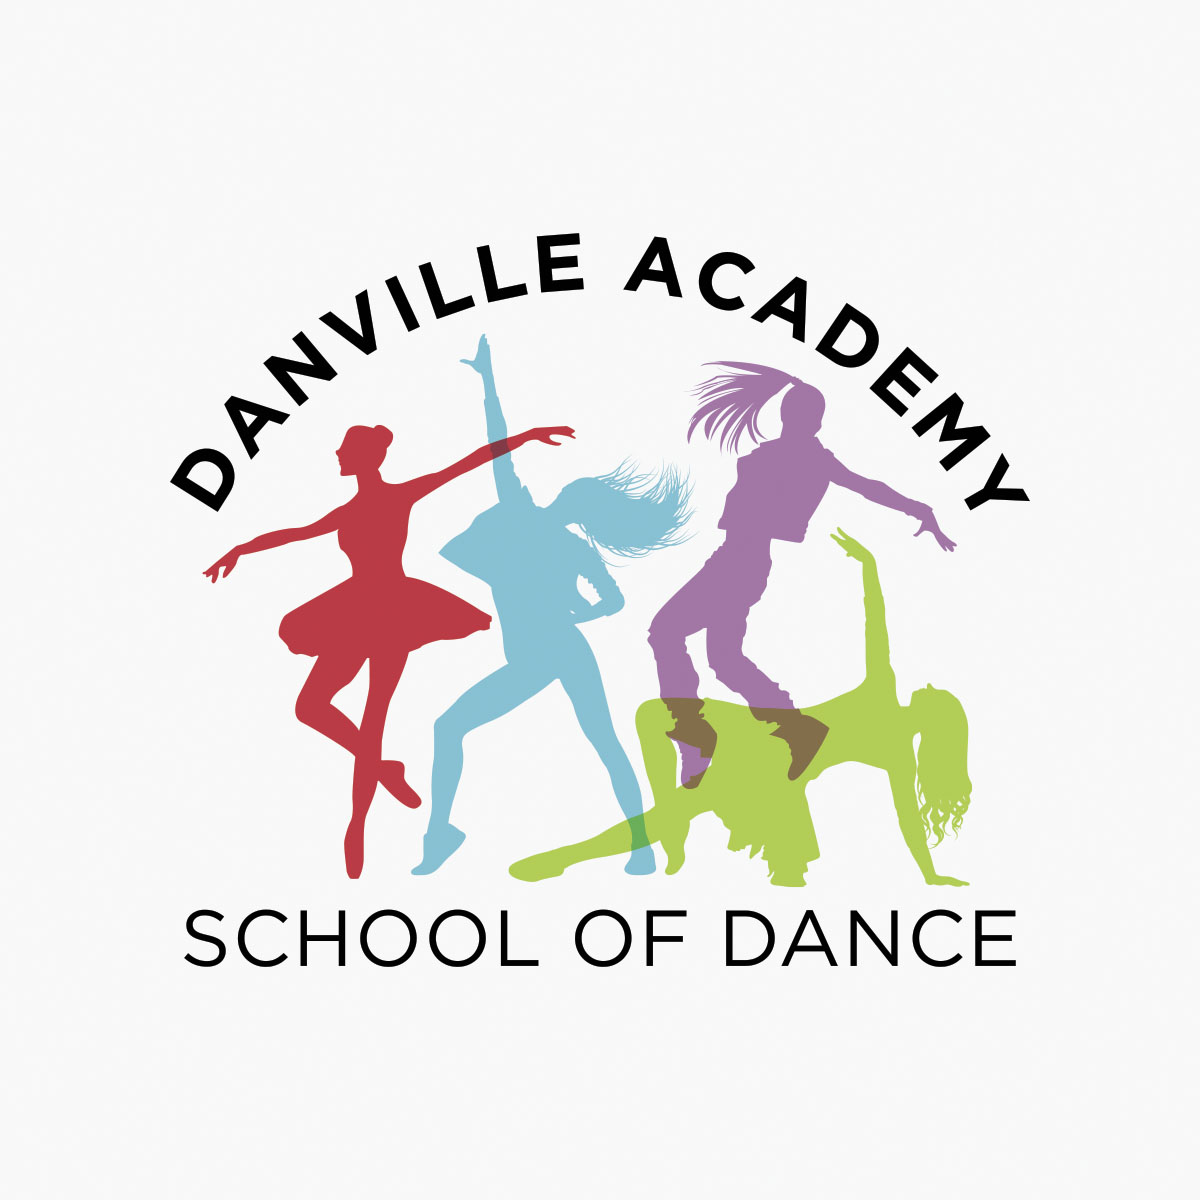 Danville Academy School of Dance Logo.jpg